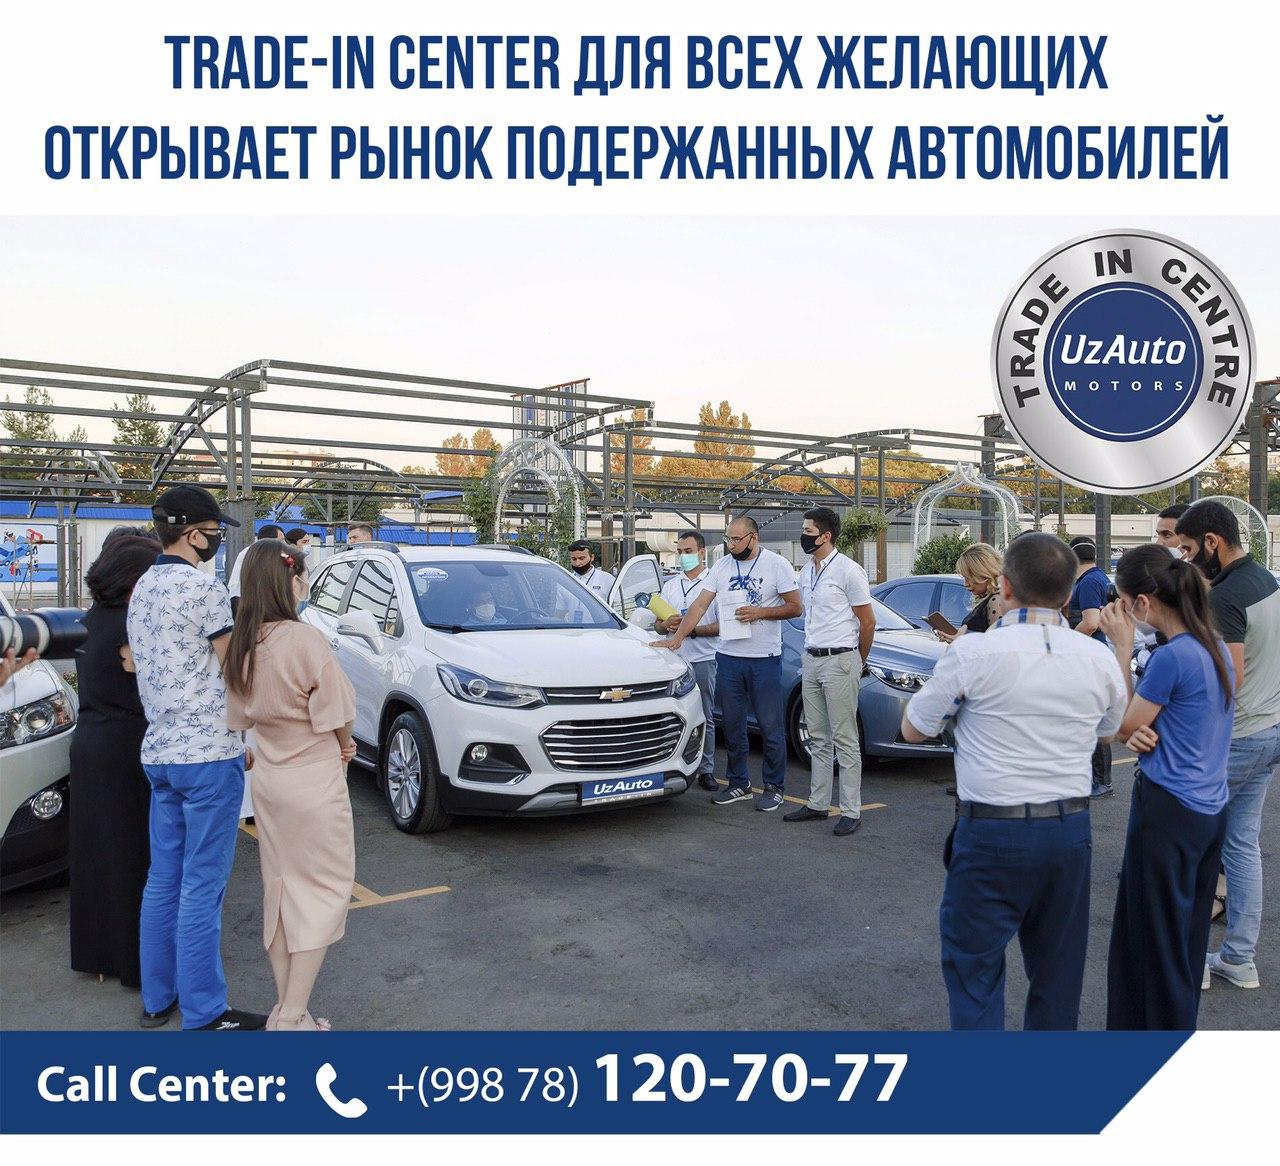 UzAuto Motors Service & Trade-In Center для всех желающих открывает рынок подержанных автомобилей 